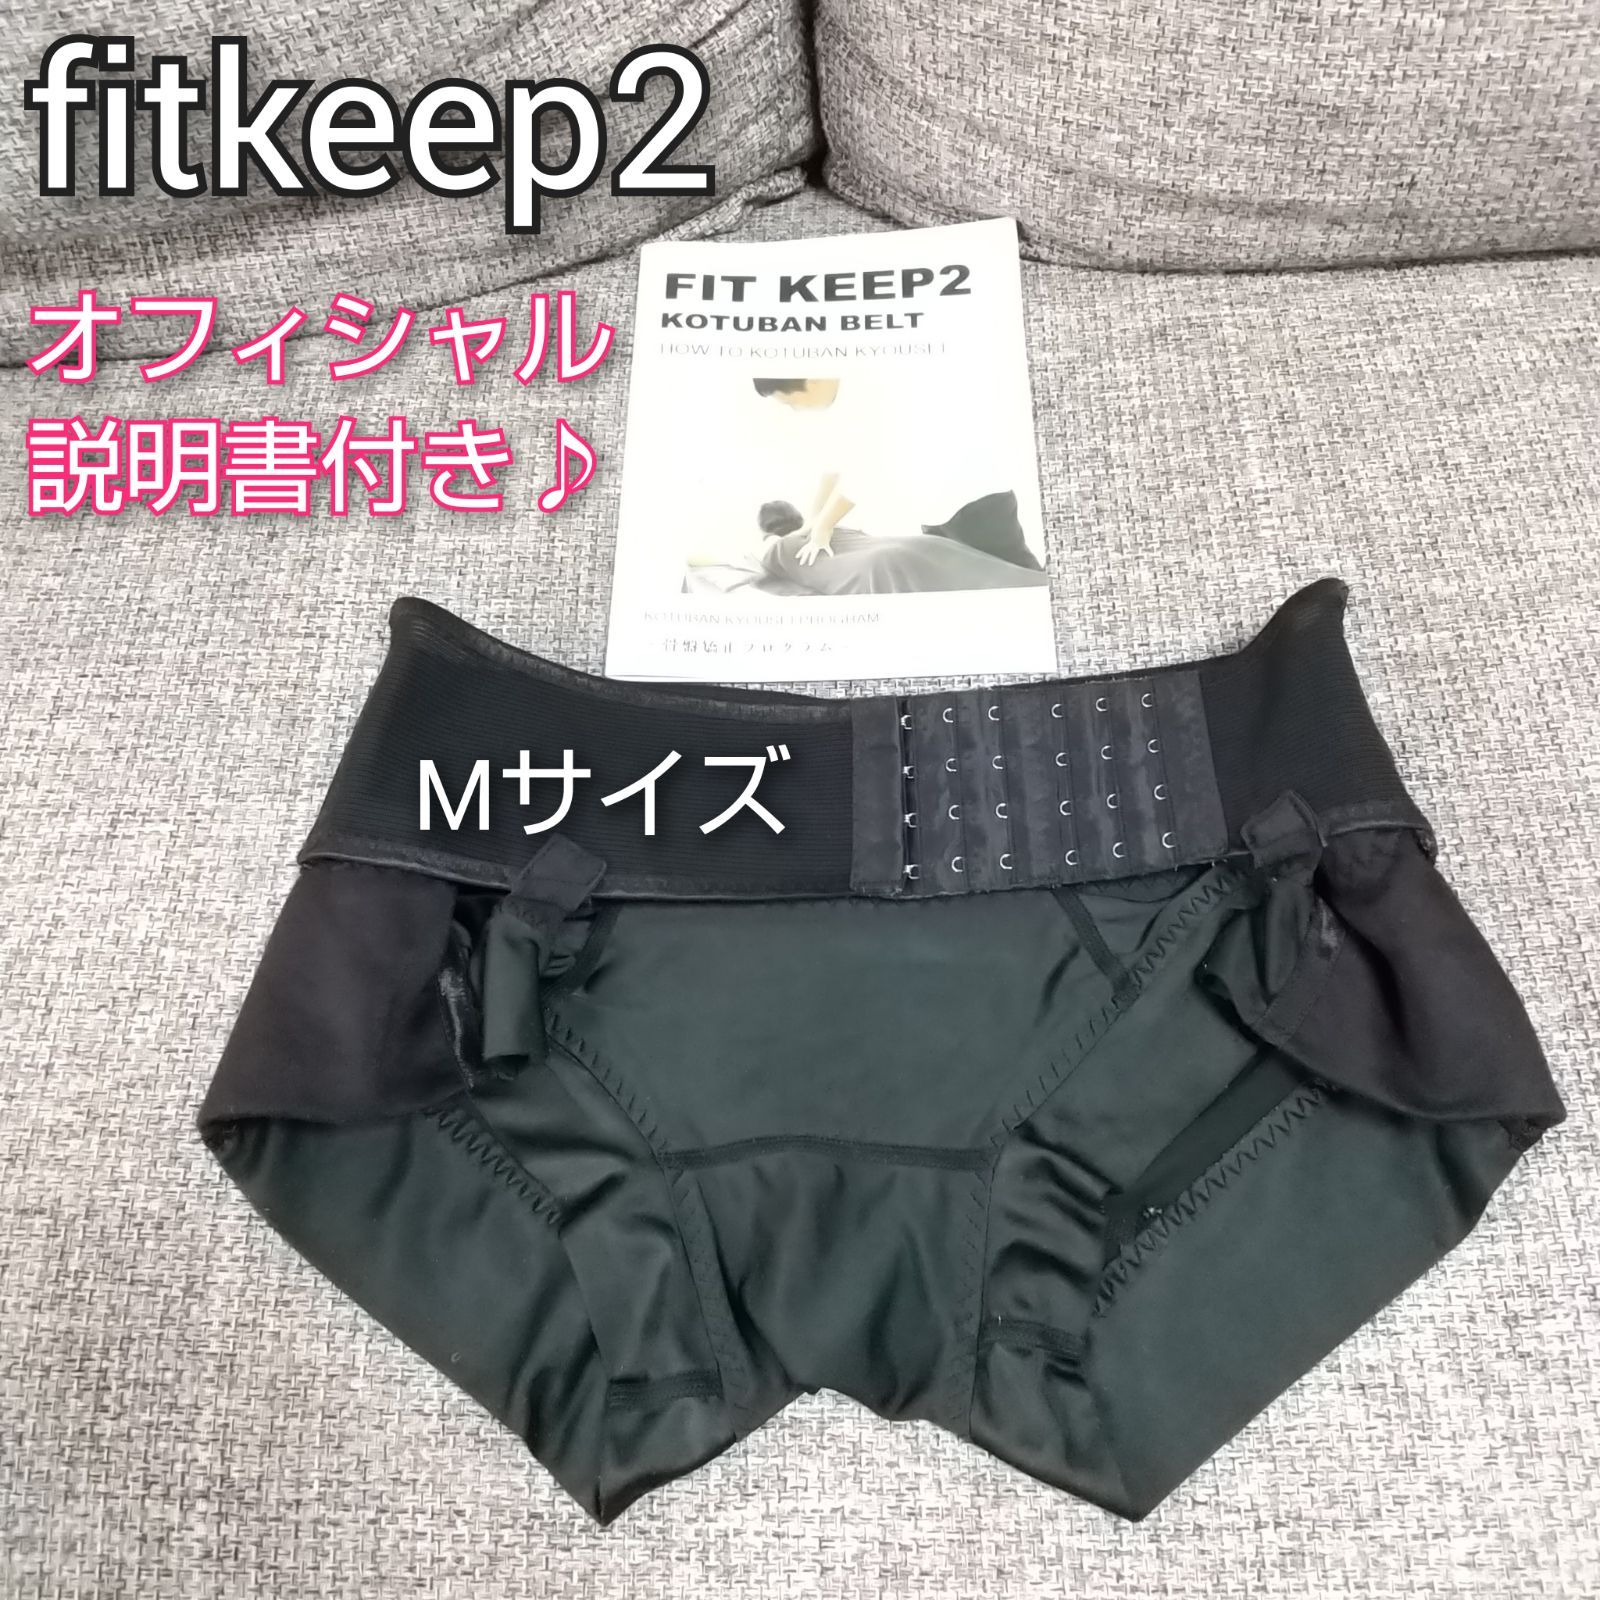 海外ブランド 【説明書付き】Fitkeep2 FITKEEP2 フィットキープ2 骨盤 